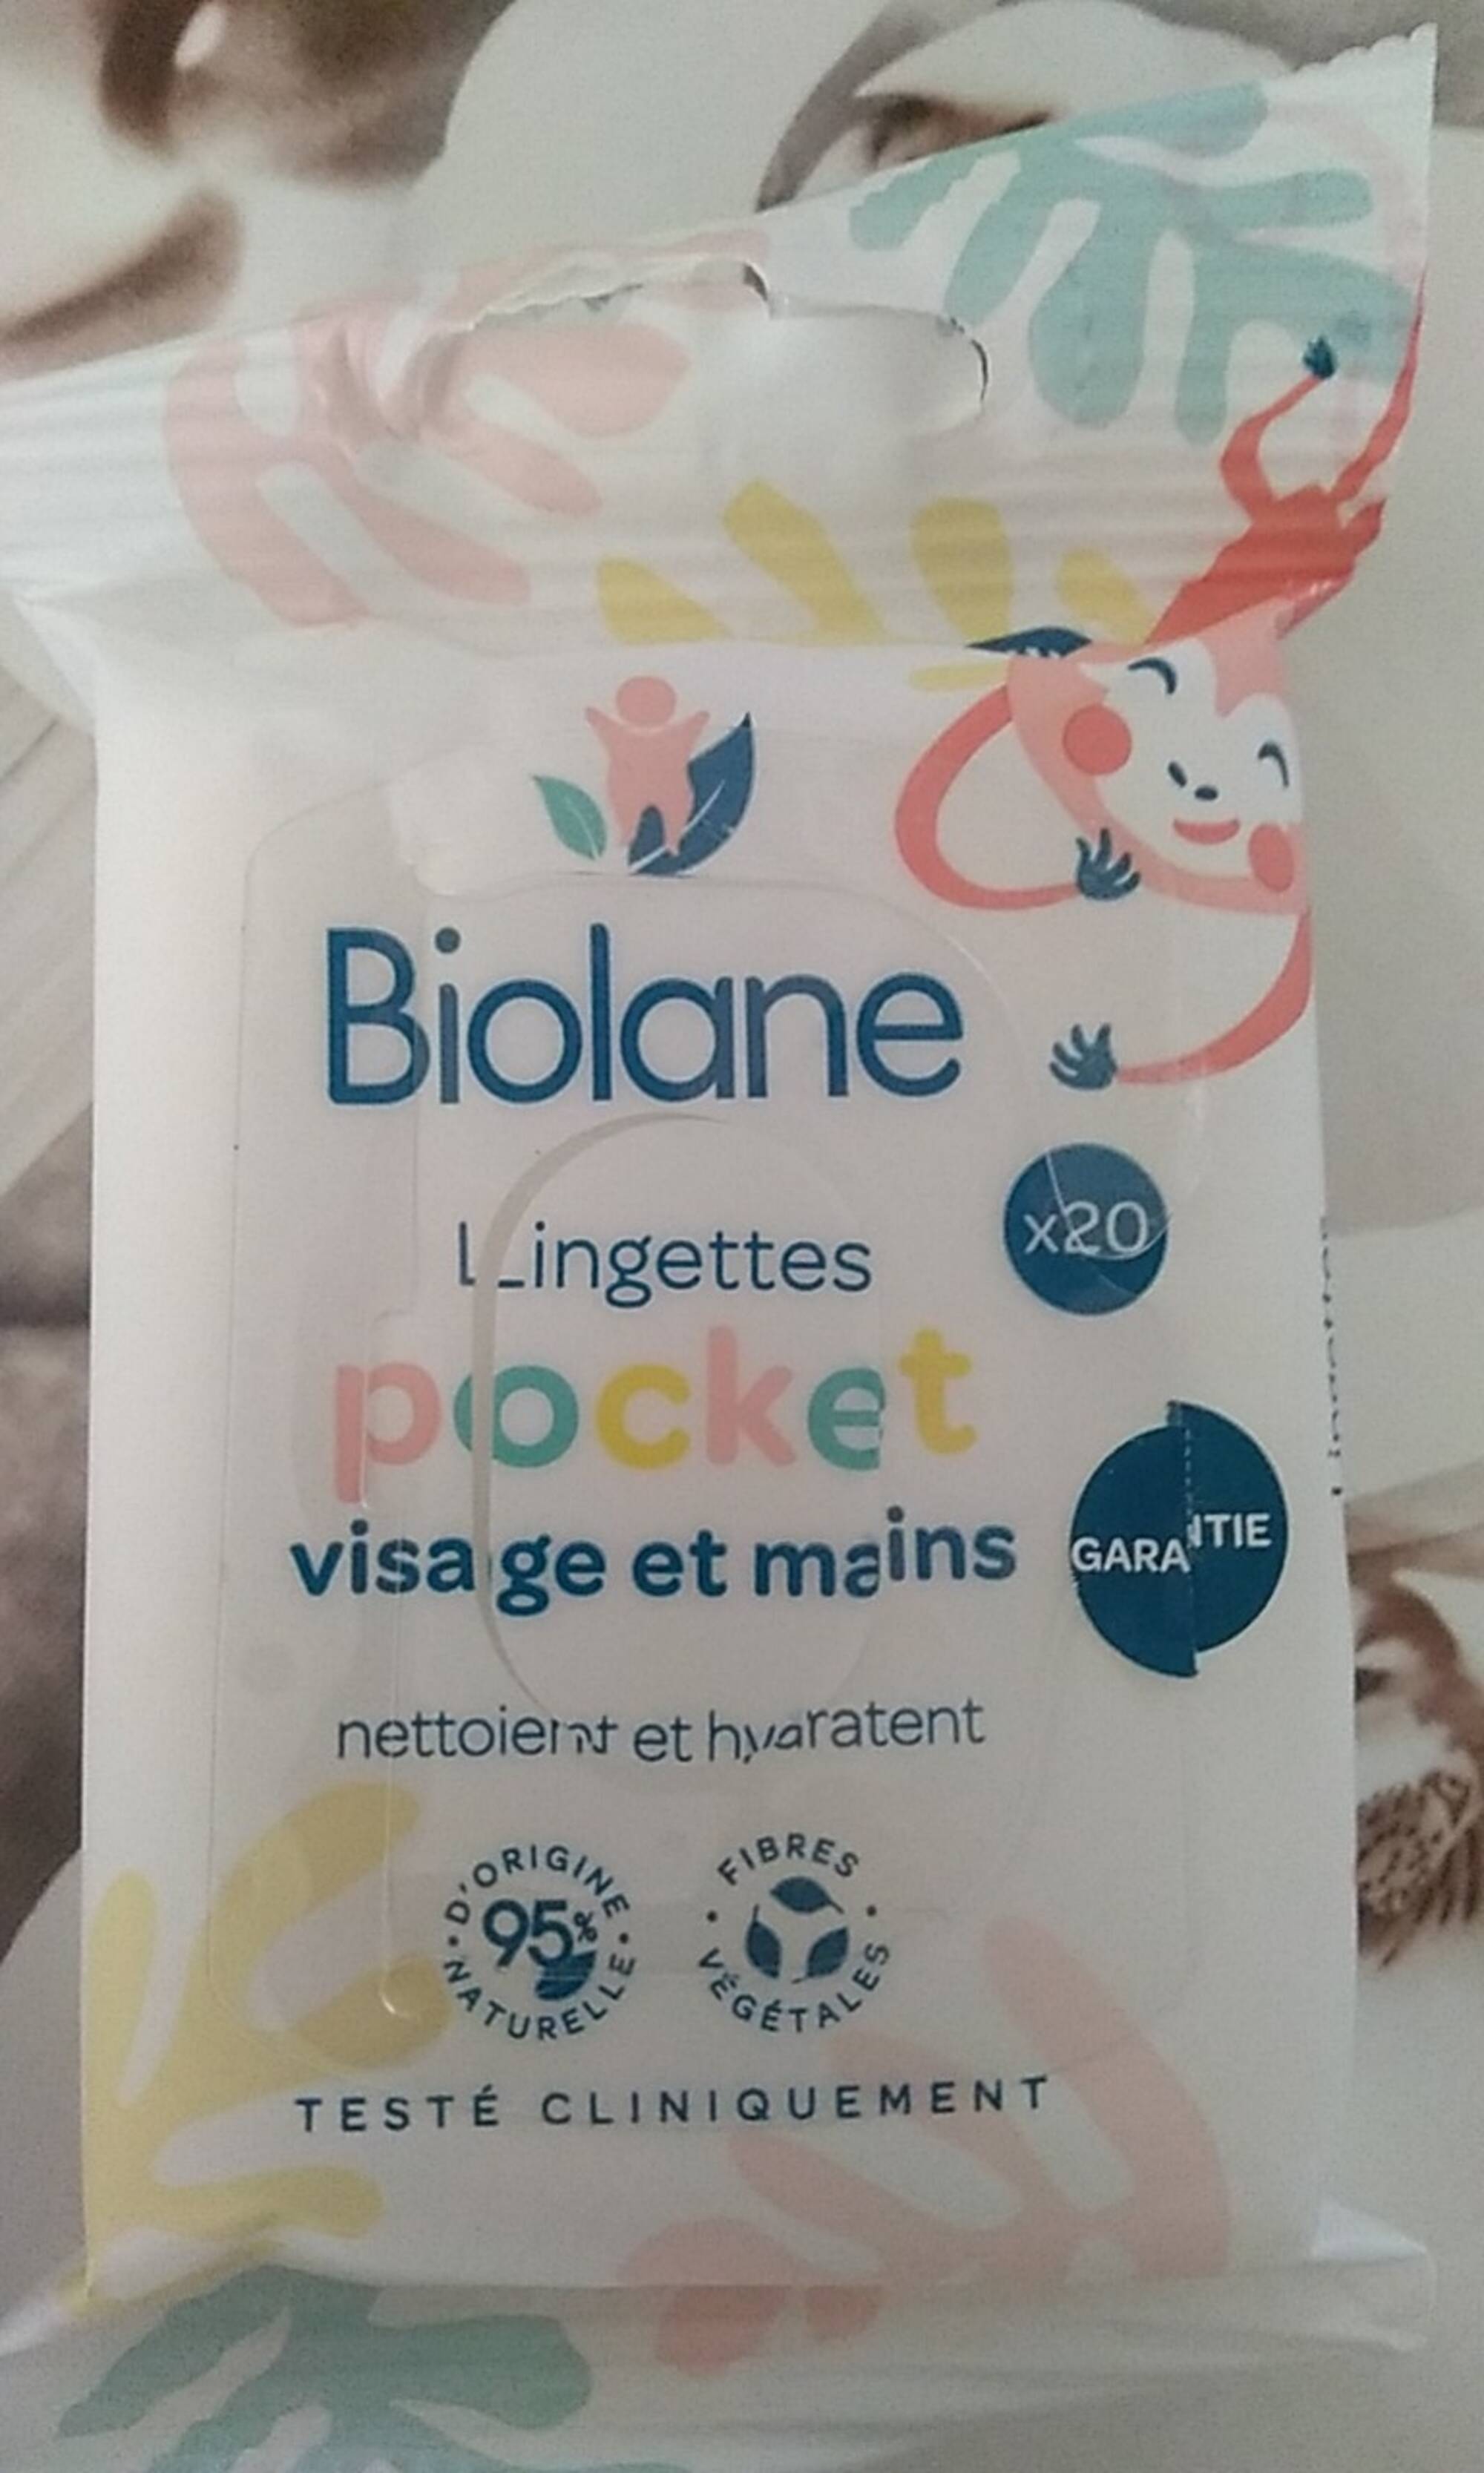 BIOLANE - Lingette pocket visage et mains